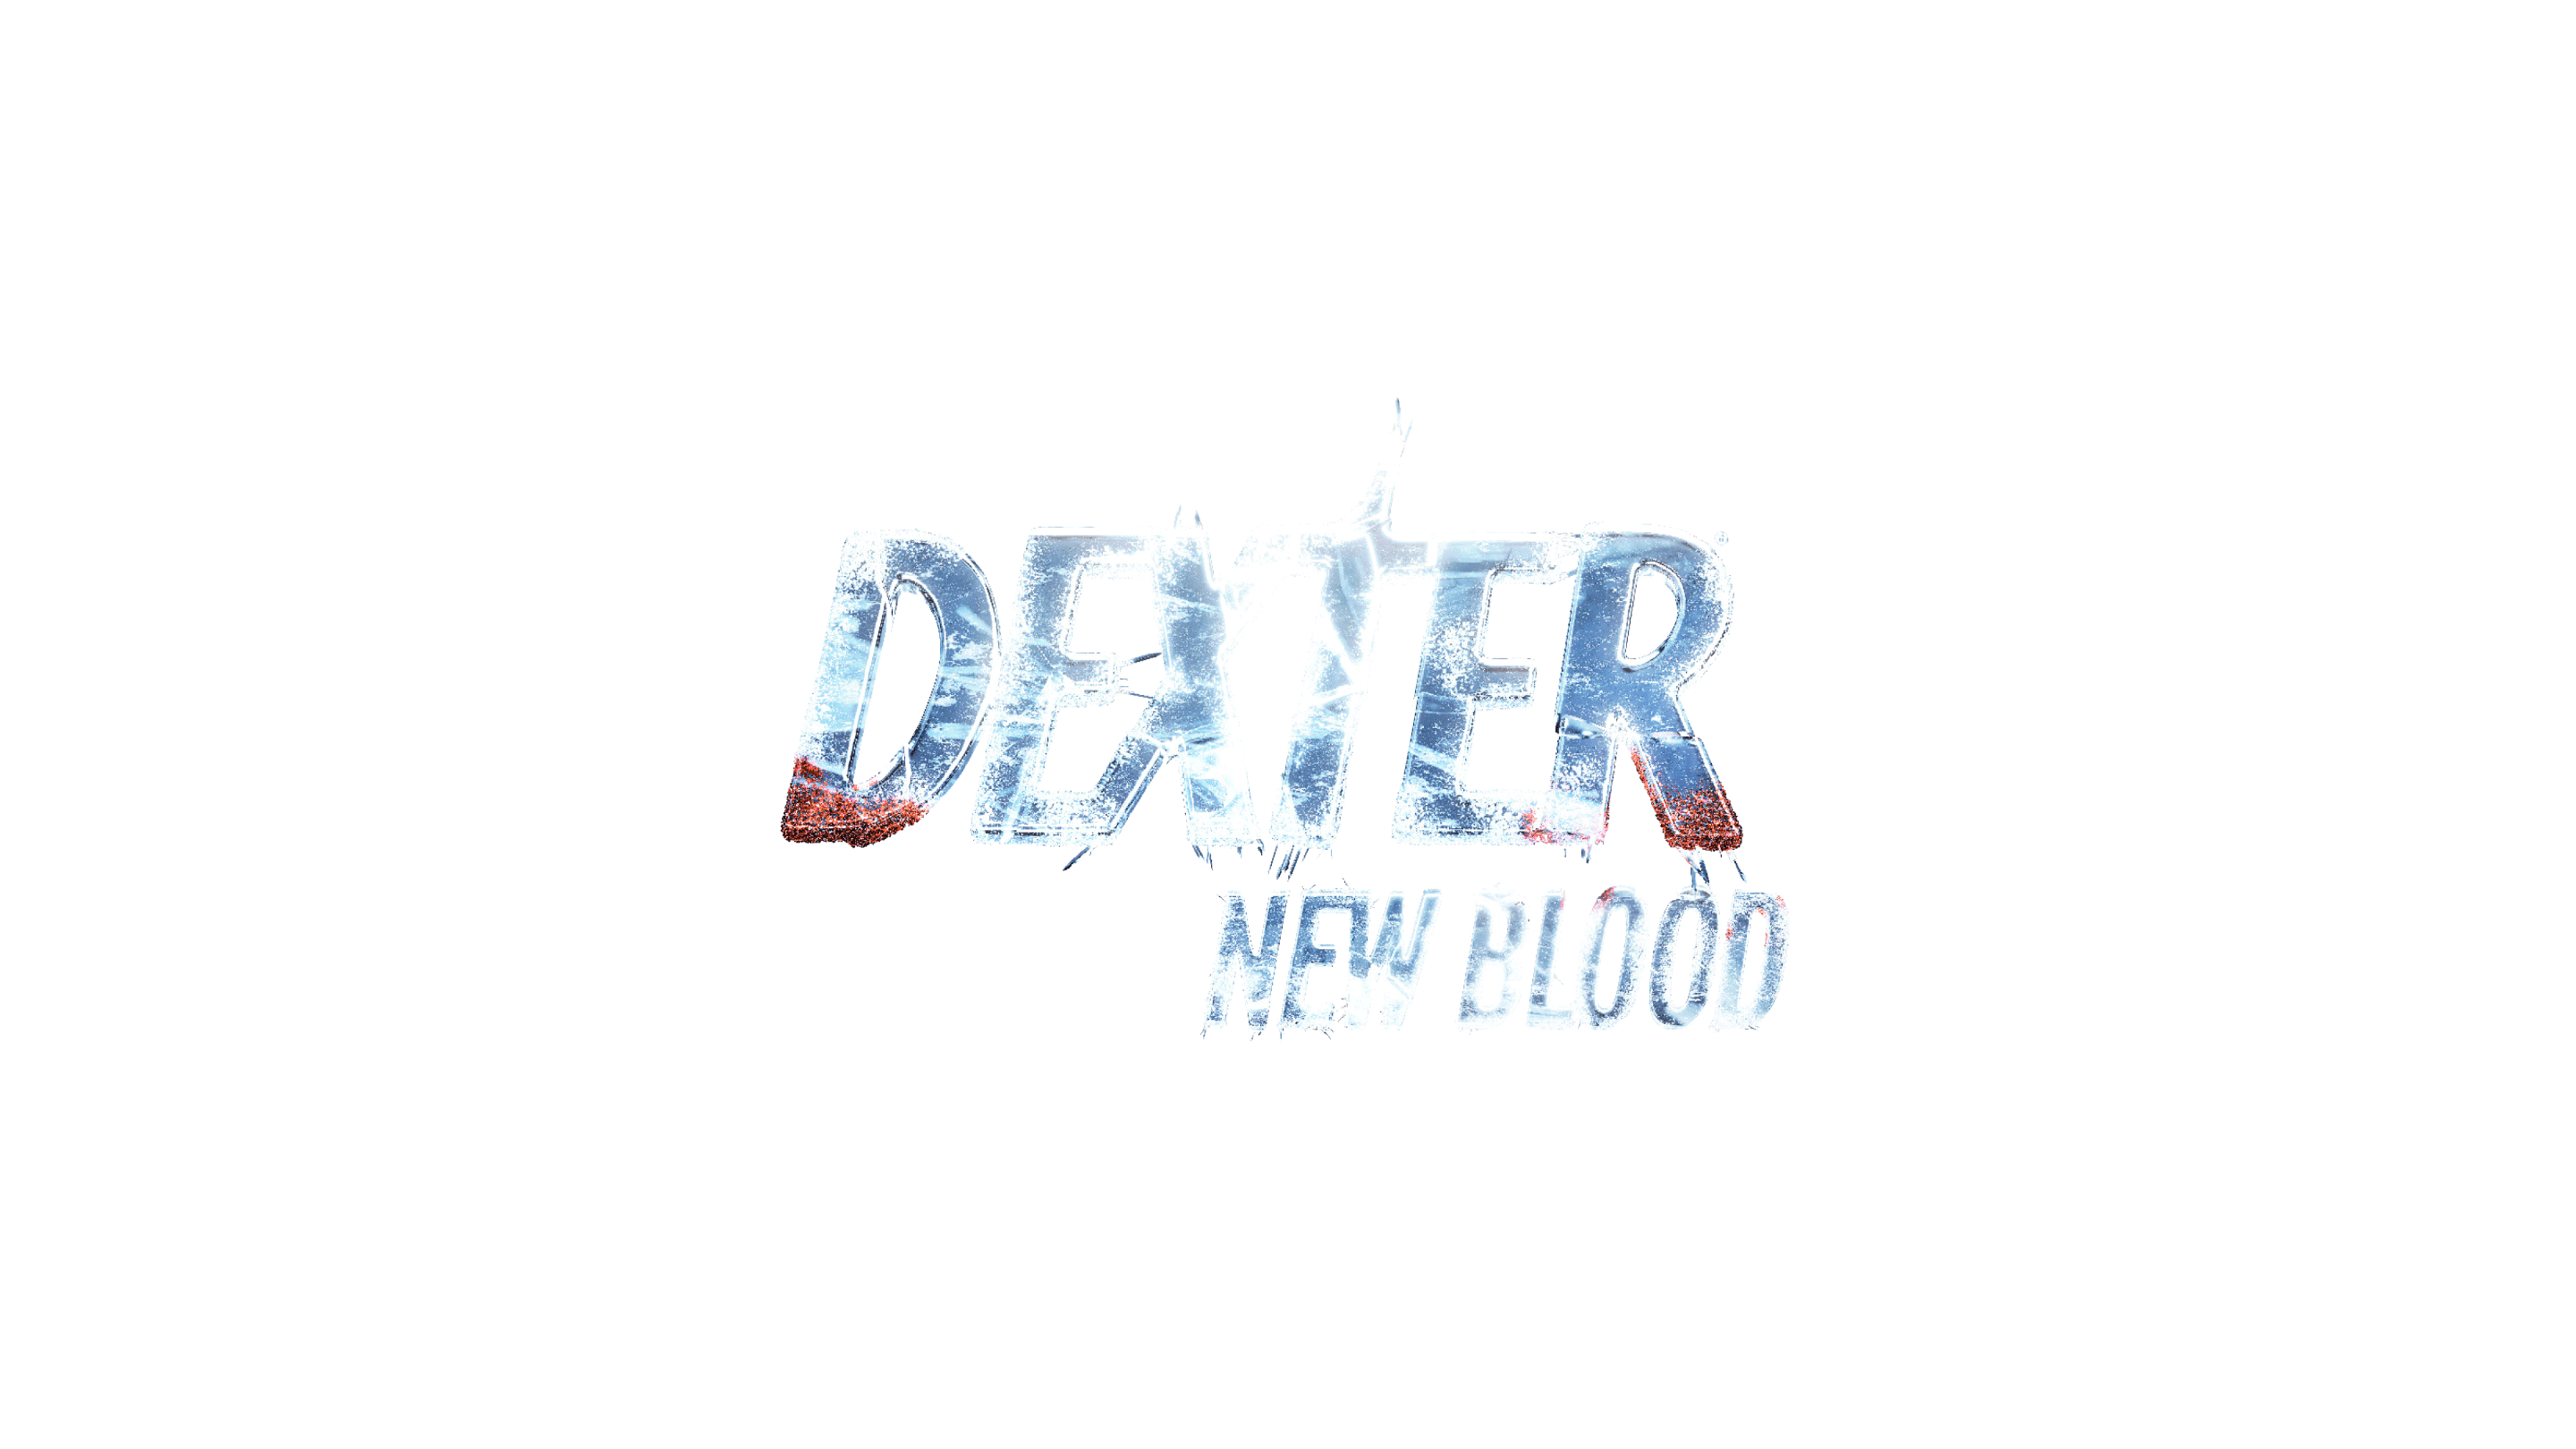 Dexter - New Blood